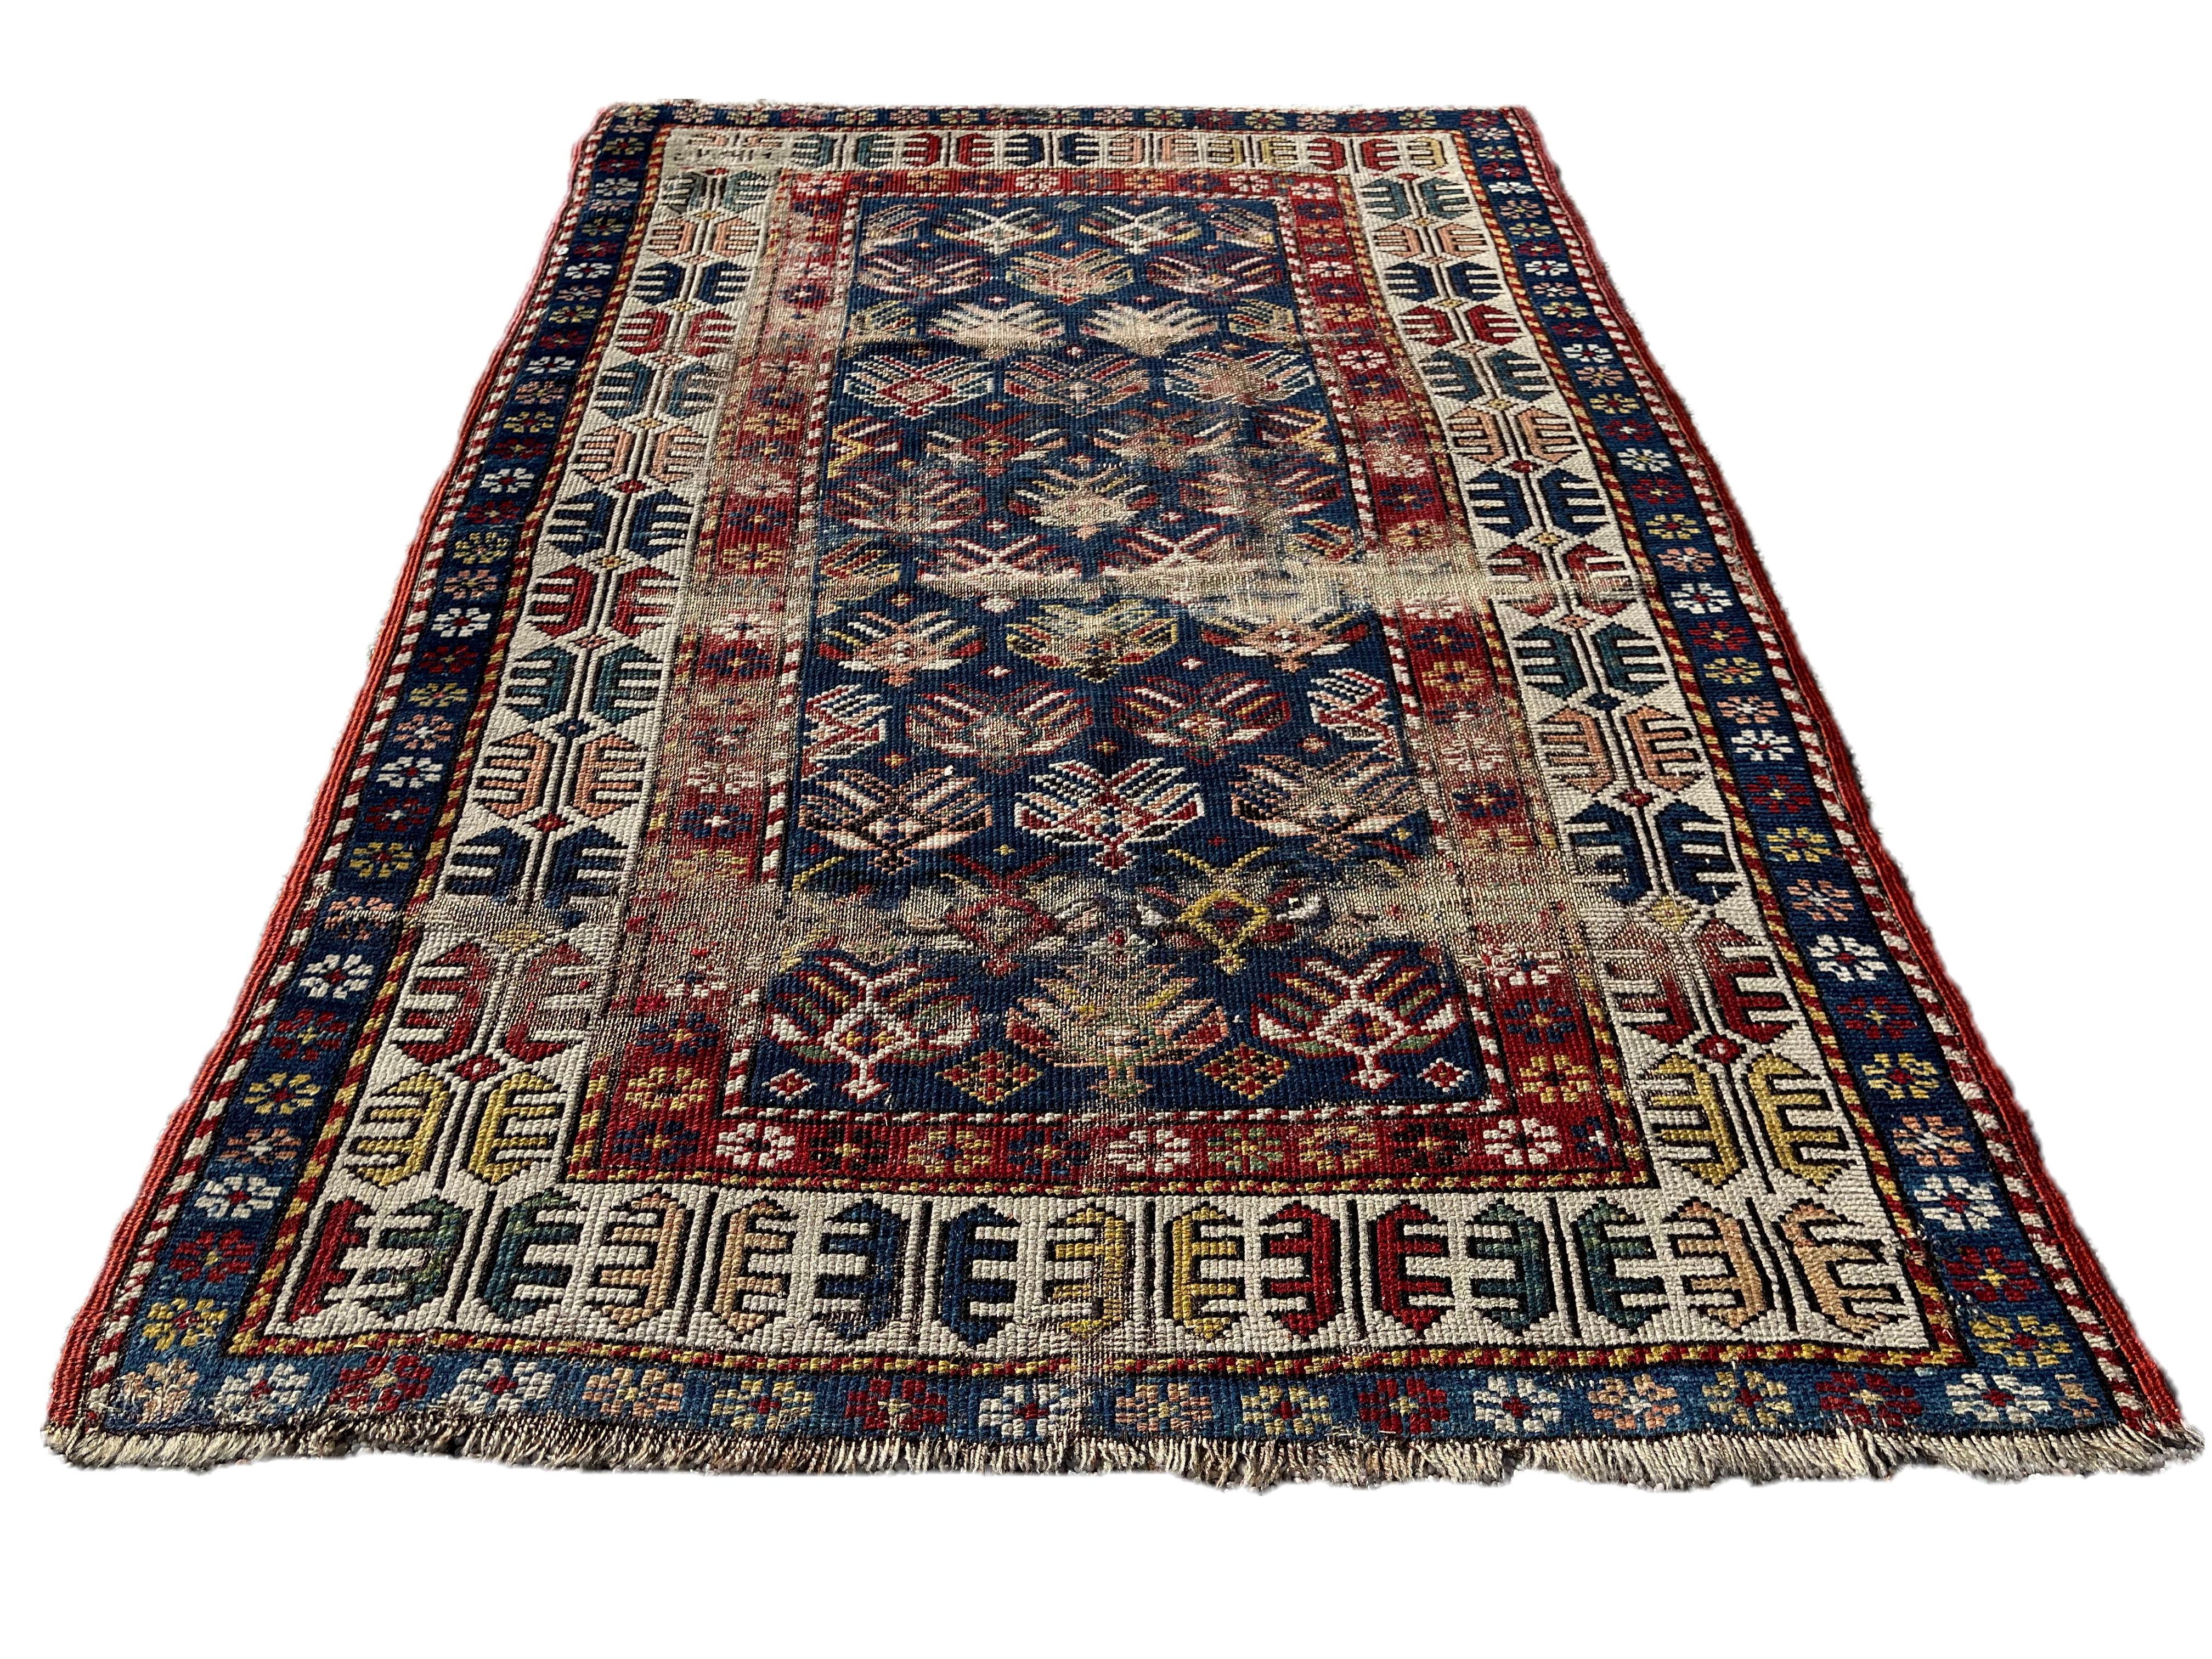 Tapis ancien du Caucase tissé à la main. Daté de 1306.

Magnifique tapis tissé à la main avec de belles combinaisons de couleurs et une laine de bonne qualité.
